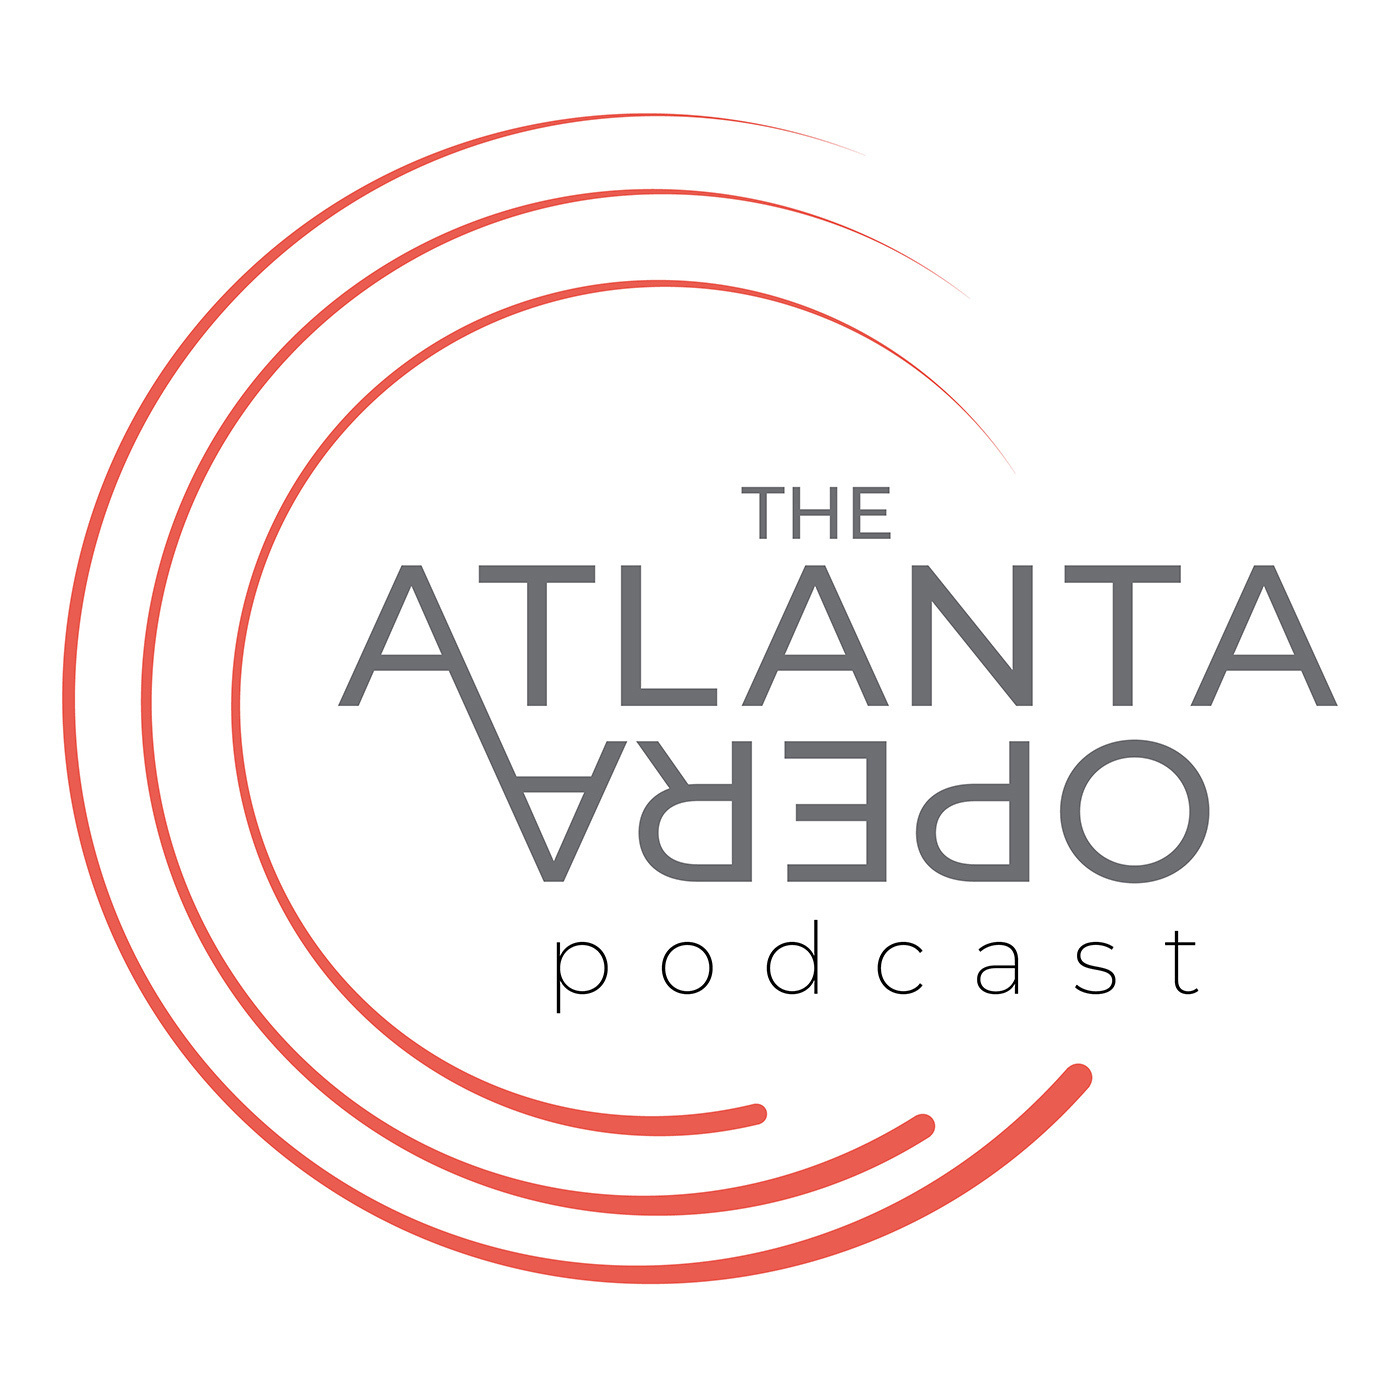 The Atlanta Opera Podcast